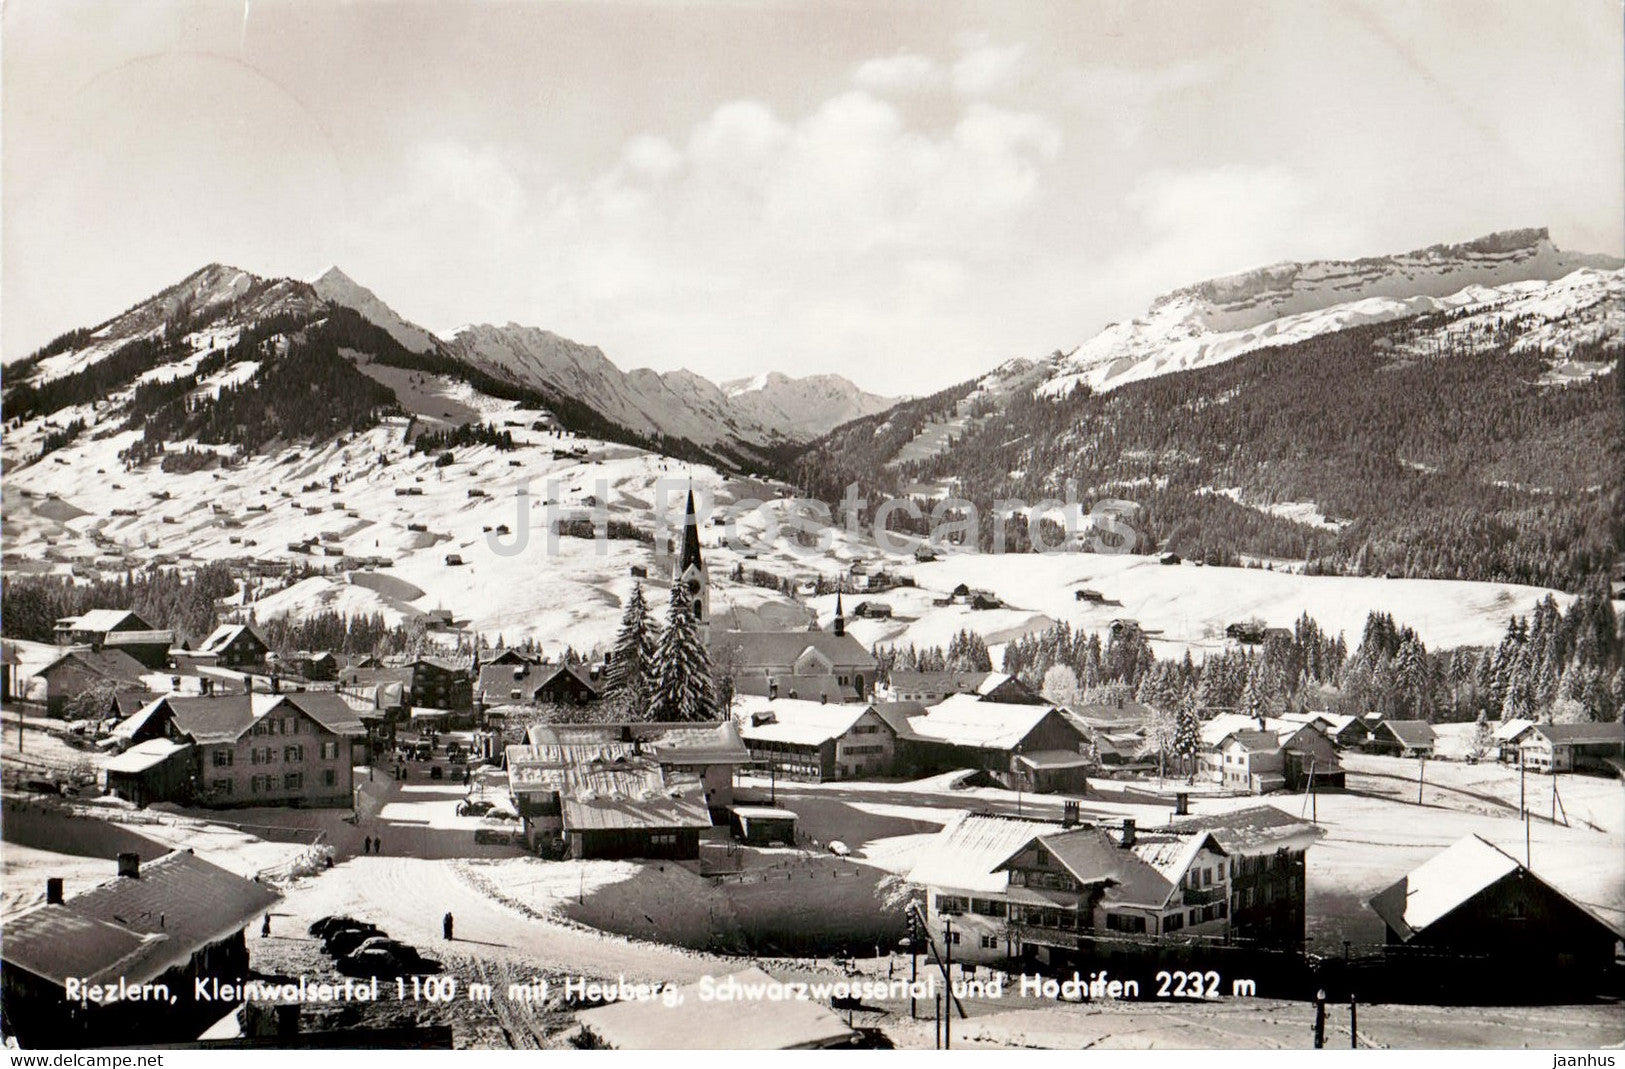 Riezlern - Kleinwalsertal - Heuberg - Schwarzwassertal - Hochifen - old postcard - 1954 - Austria - used - JH Postcards